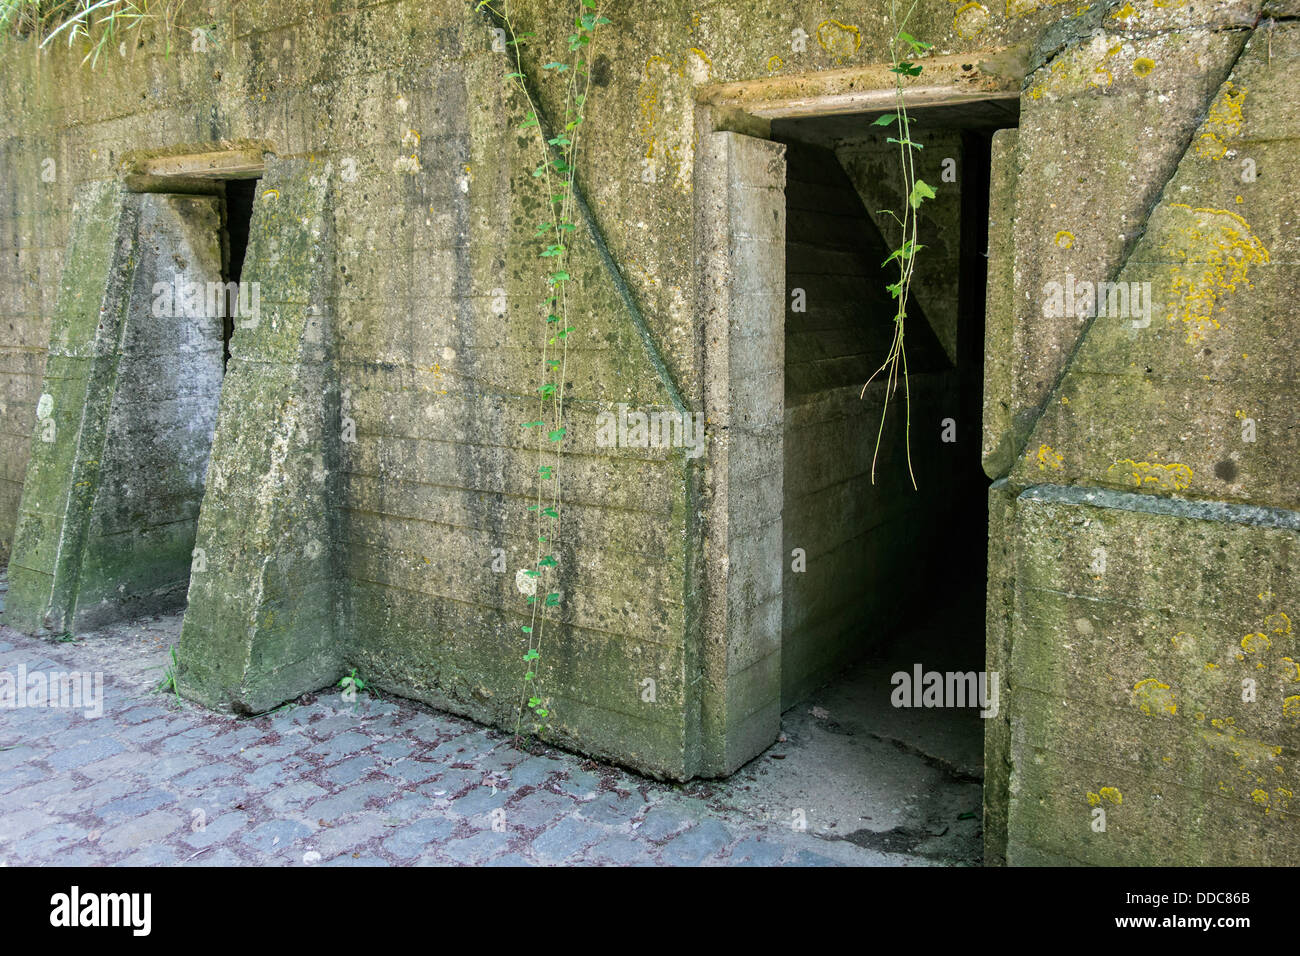 Première Guerre mondiale, un poste de secours avancé / ADS bunkers à la WW1 site de John McCrae Près d'Ypres, Flandre occidentale, Belgique Banque D'Images